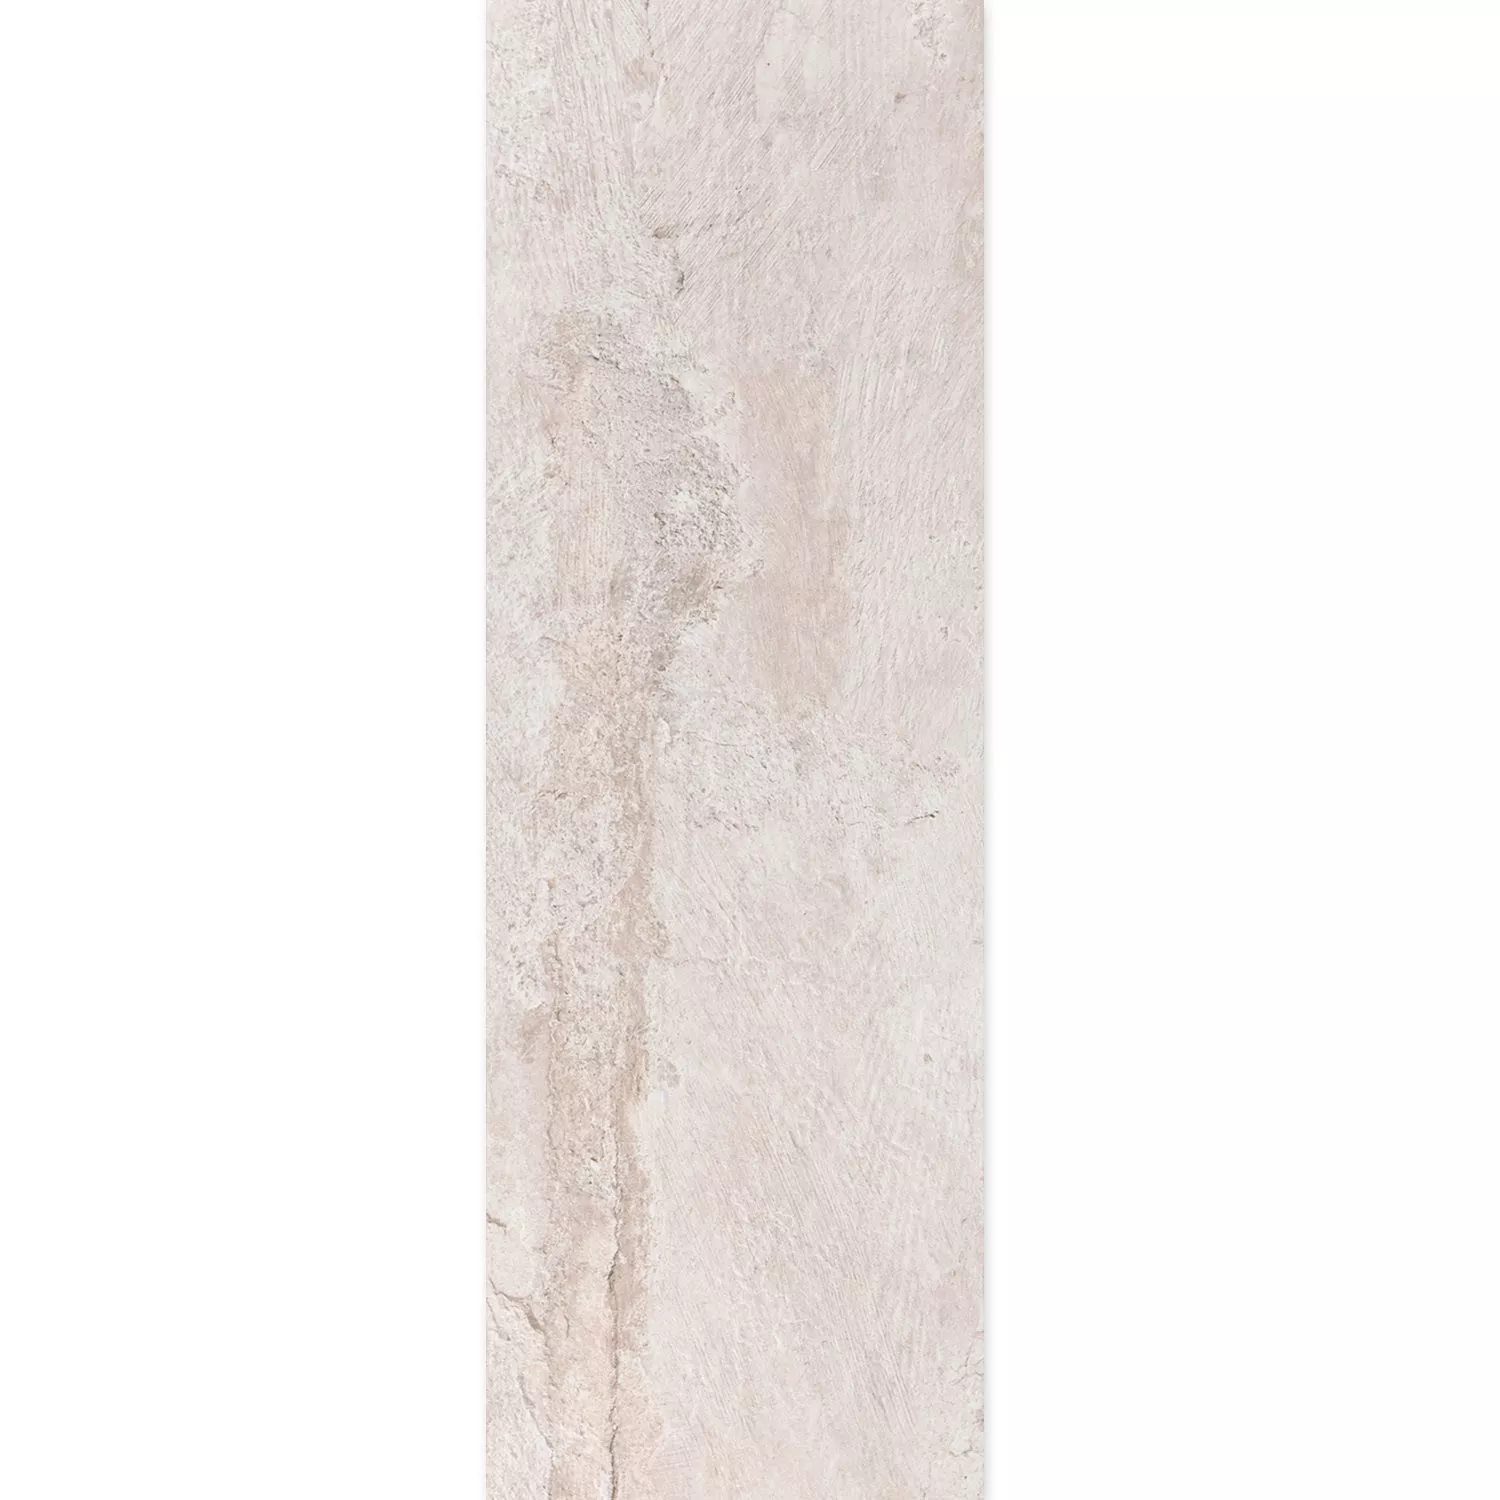 Muster Bodenfliese Steinoptik Polaris R10 Weiß 30x120cm